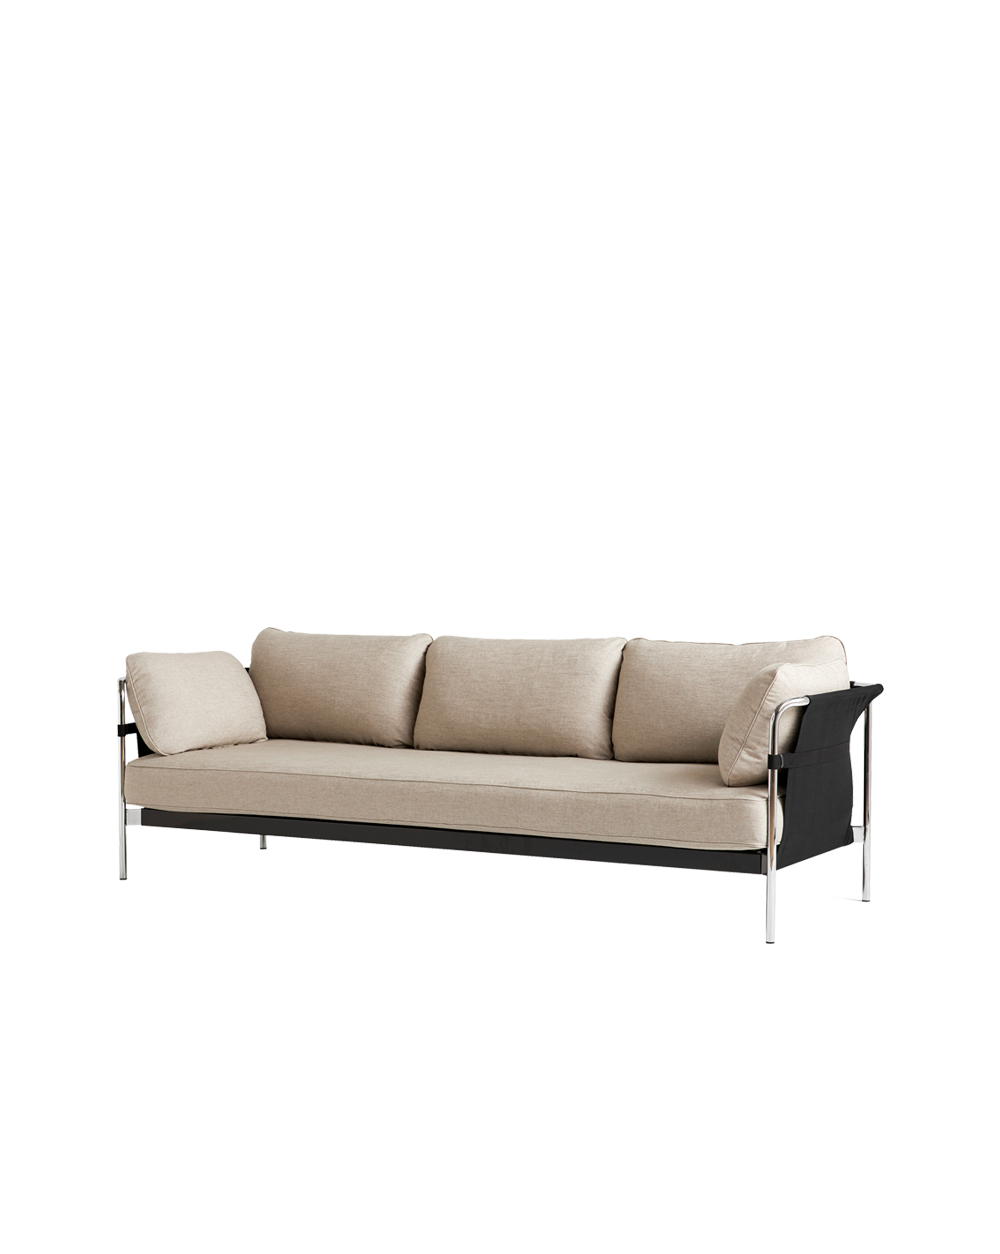 Sofaen Can fra Hay med stålrørsramme i krom leveres med flere ulike typer trekk på putene. Dette er en moderne sofa som også er praktisk – den leveres nemlig flatpakket og monteres av deg selv.  